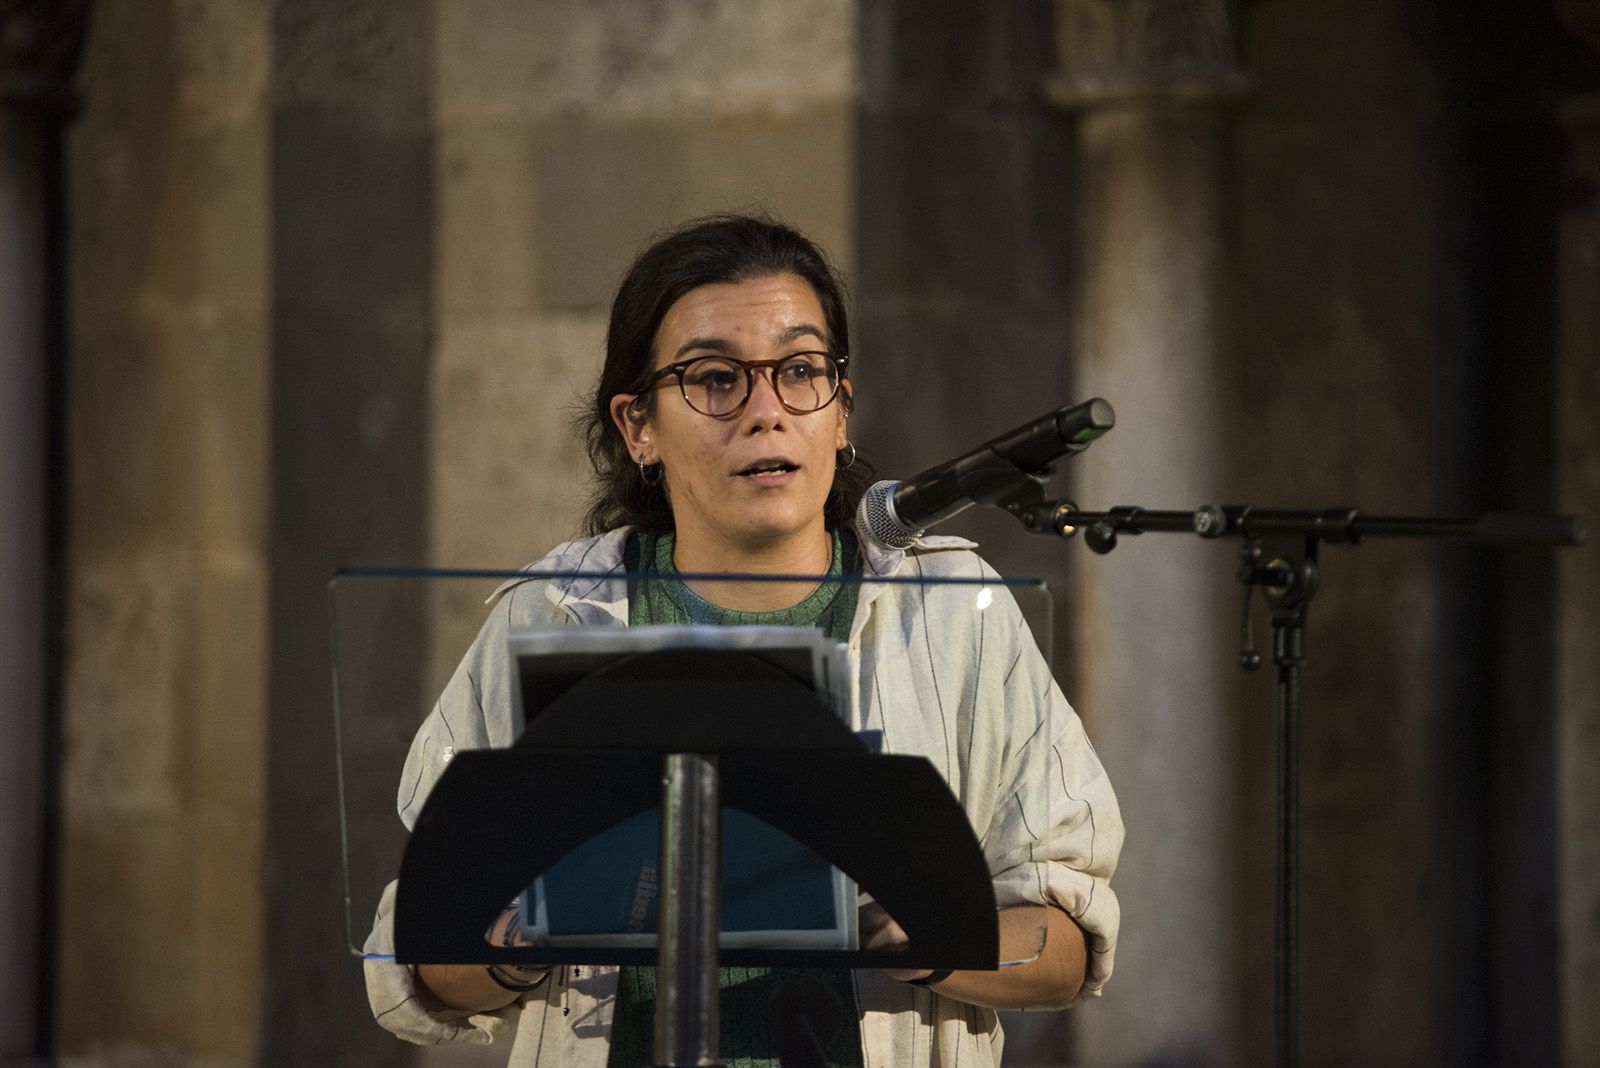 La regidora Esther Madrona parlant a la presentació de la 13a edició de la revista Món Sant Cugat. FOTO: Bernat Millet.